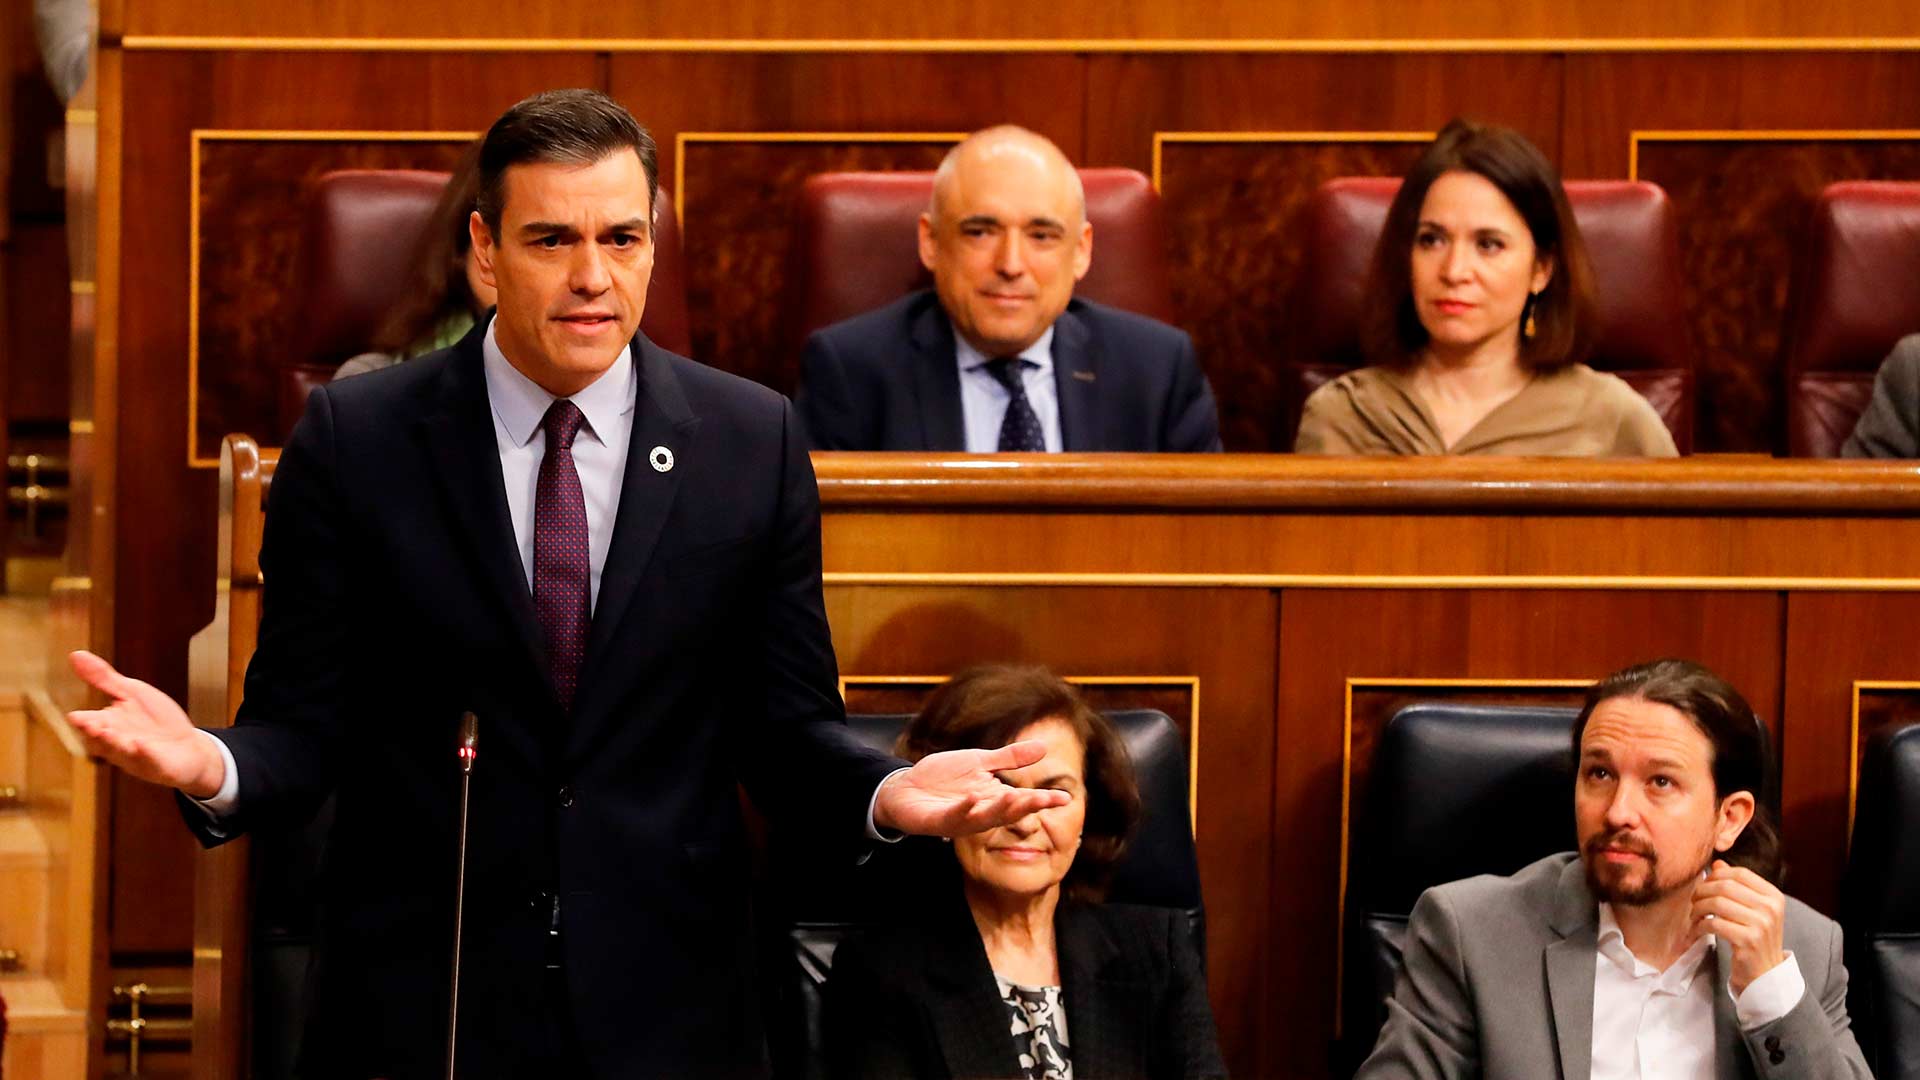 Sánchez reitera su apoyo a Ábalos y se refiere a Guaidó como el "líder de la oposición en Venezuela"